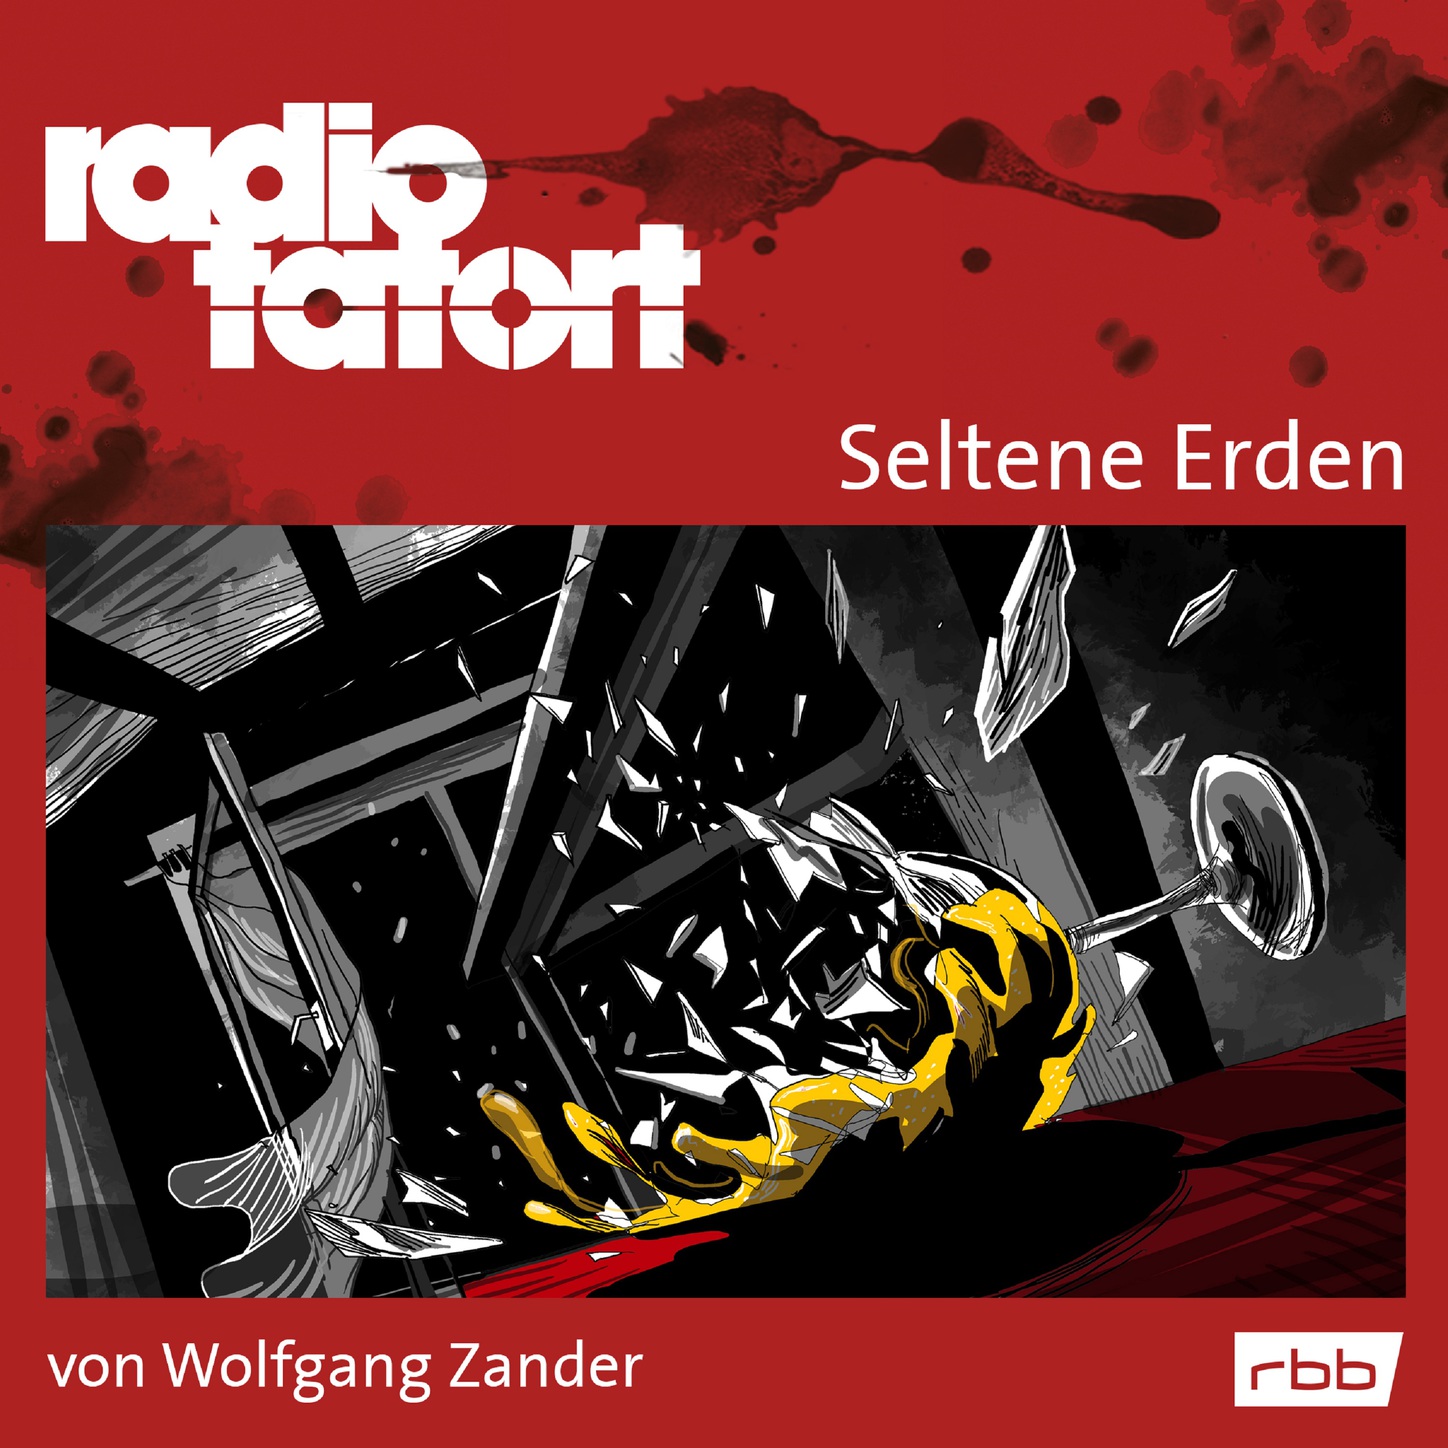 Скачать Radio Tatort rbb - Seltene Erden - Wolfgang Zander